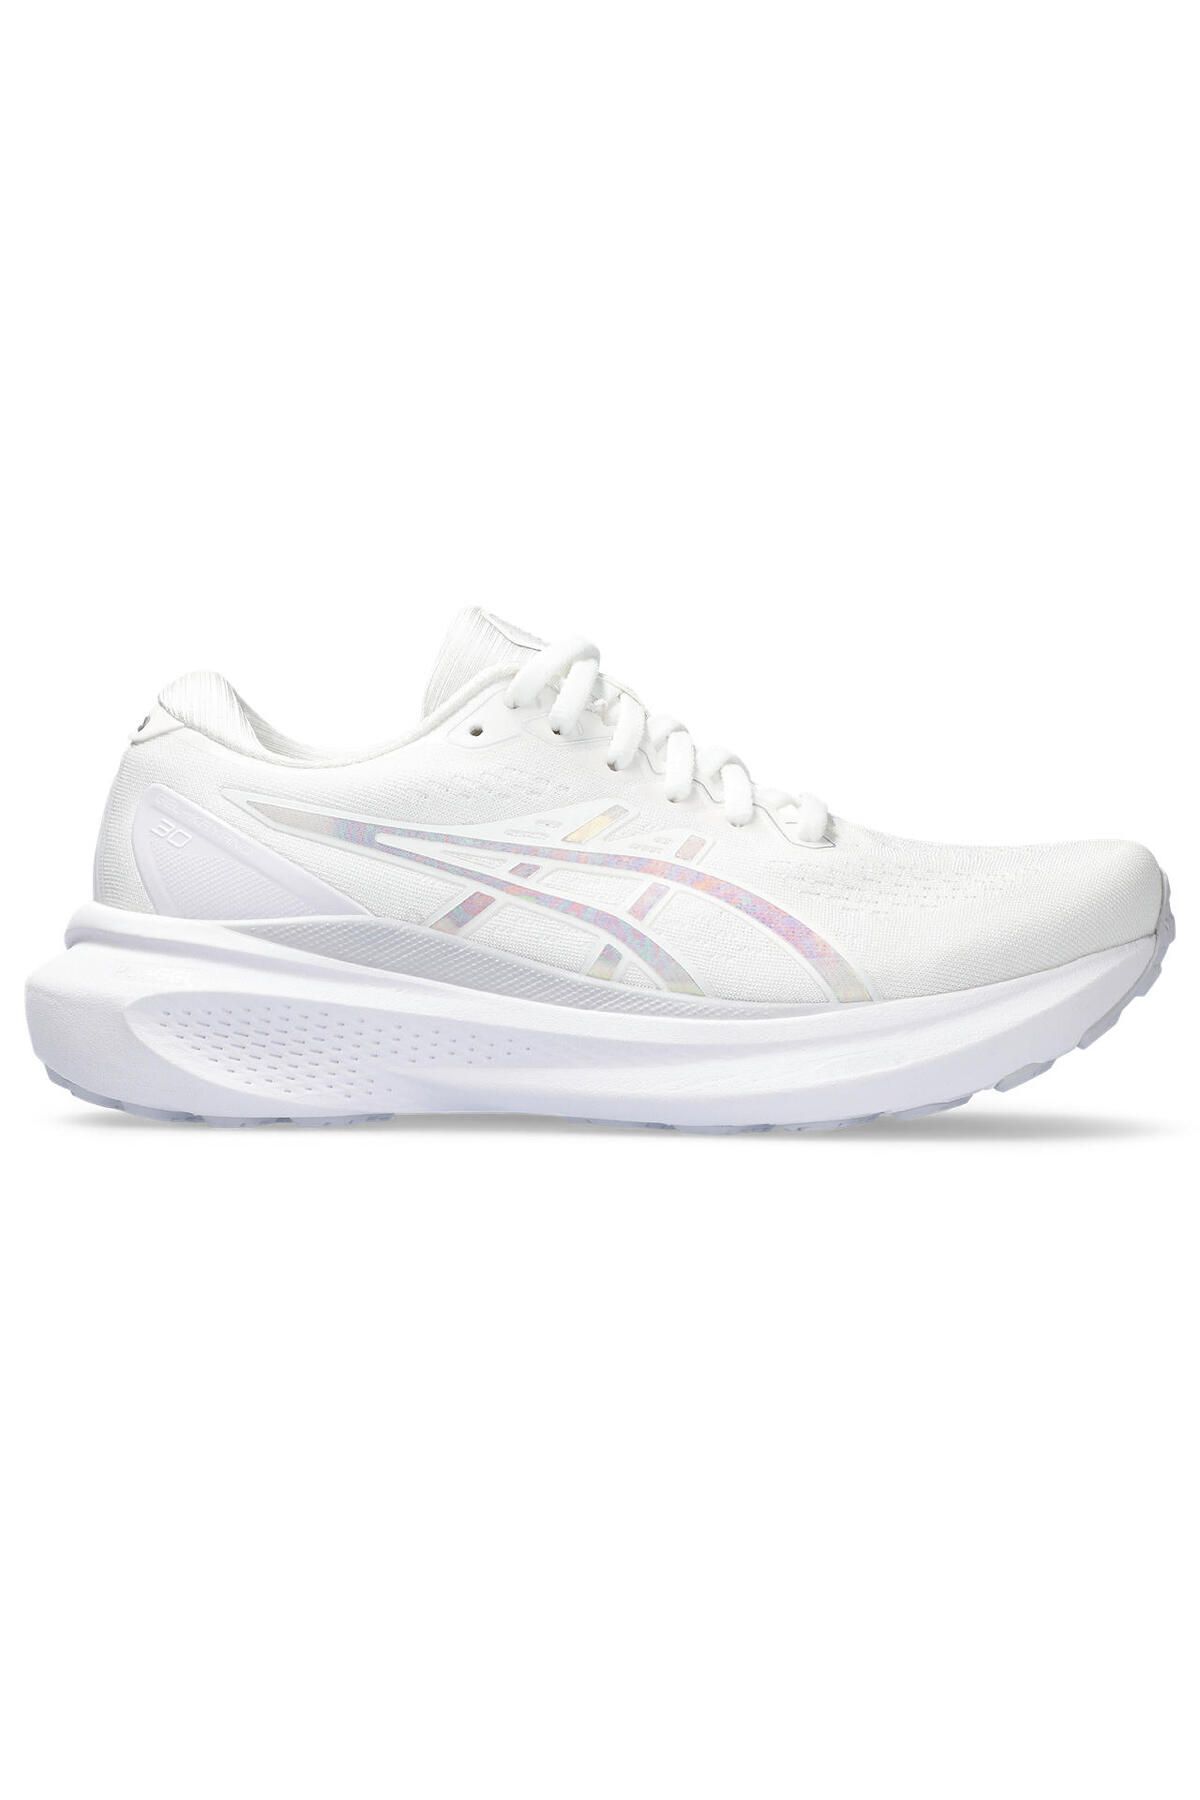 Asics Gel-Kayano 30 Anniversary Kadın Beyaz Koşu Ayakkabısı 1012B627-101